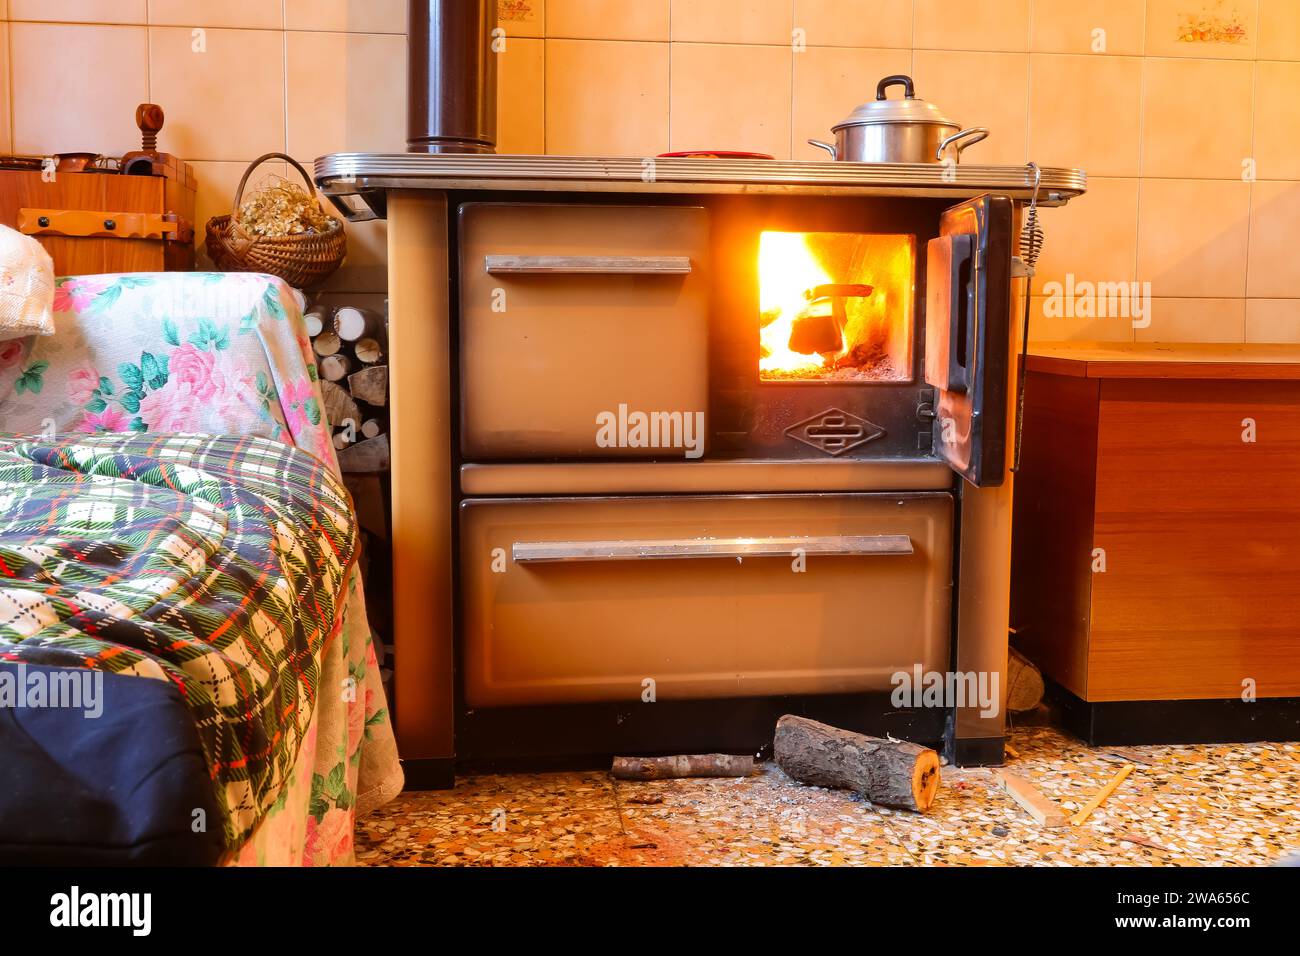 stufa a legna della cucina economica all'interno di una casa di montagna senza persone con il fuoco acceso Foto Stock